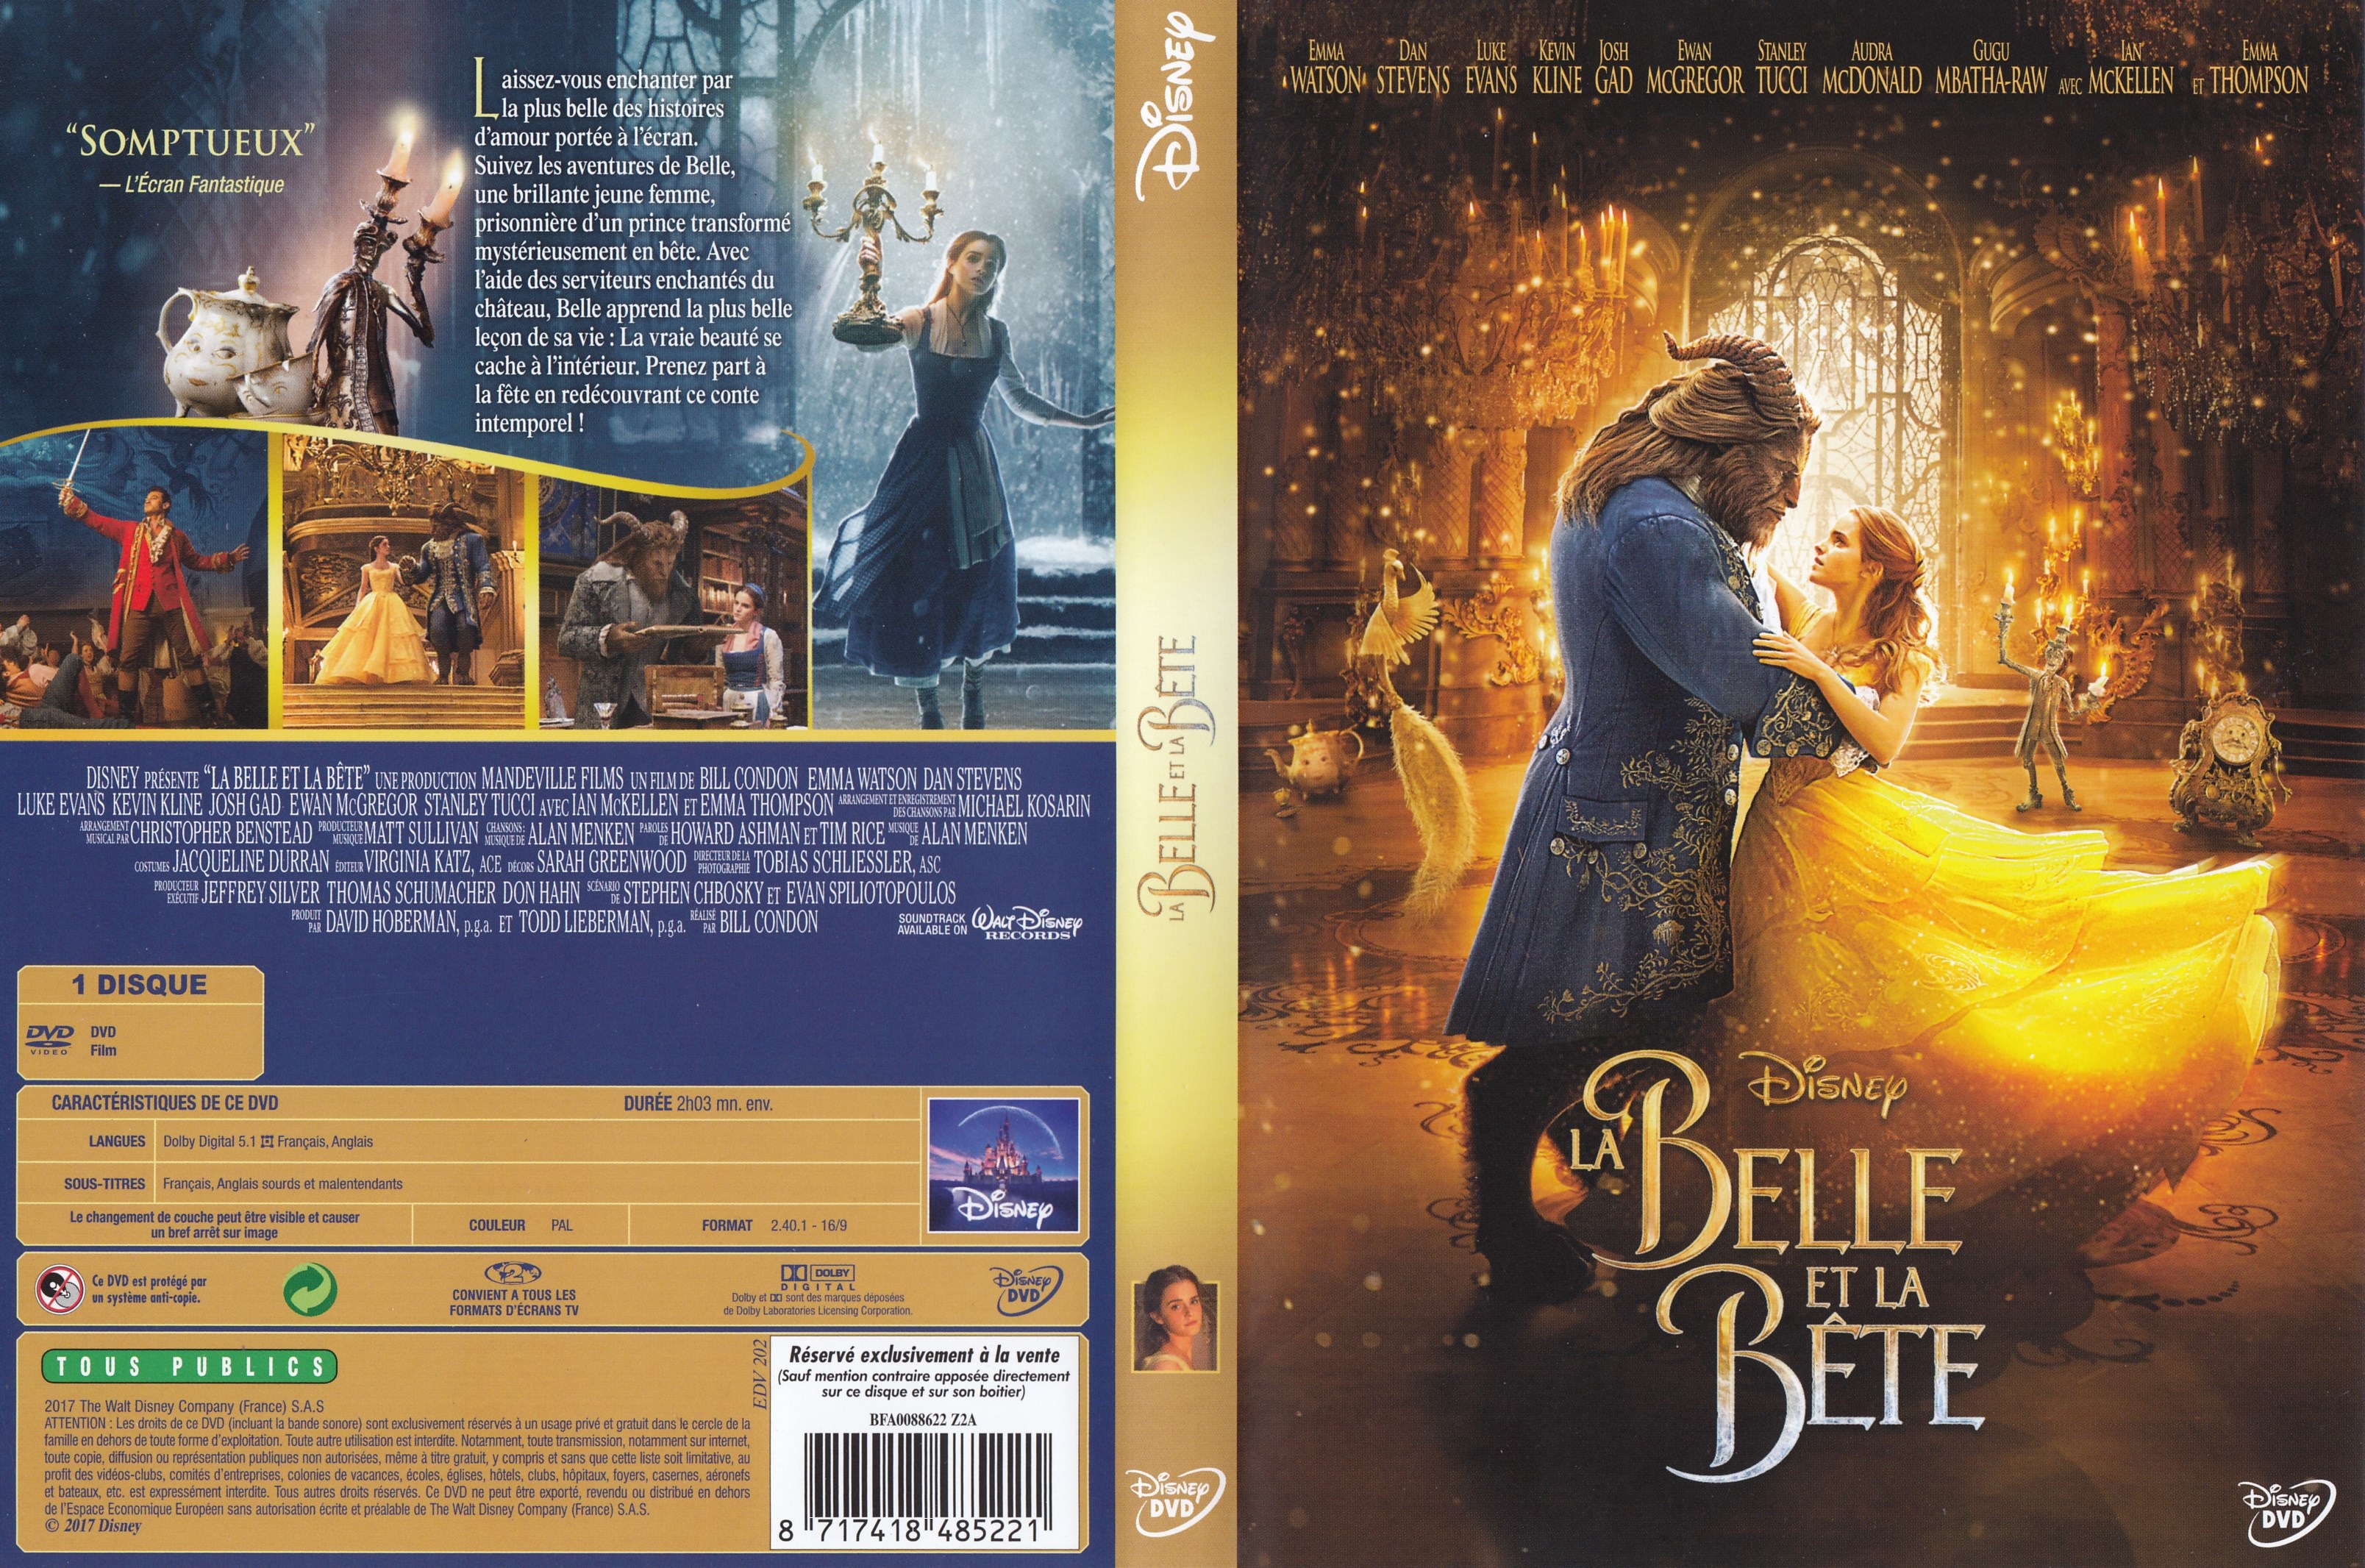 Jaquette DVD La belle et la bte (2017)